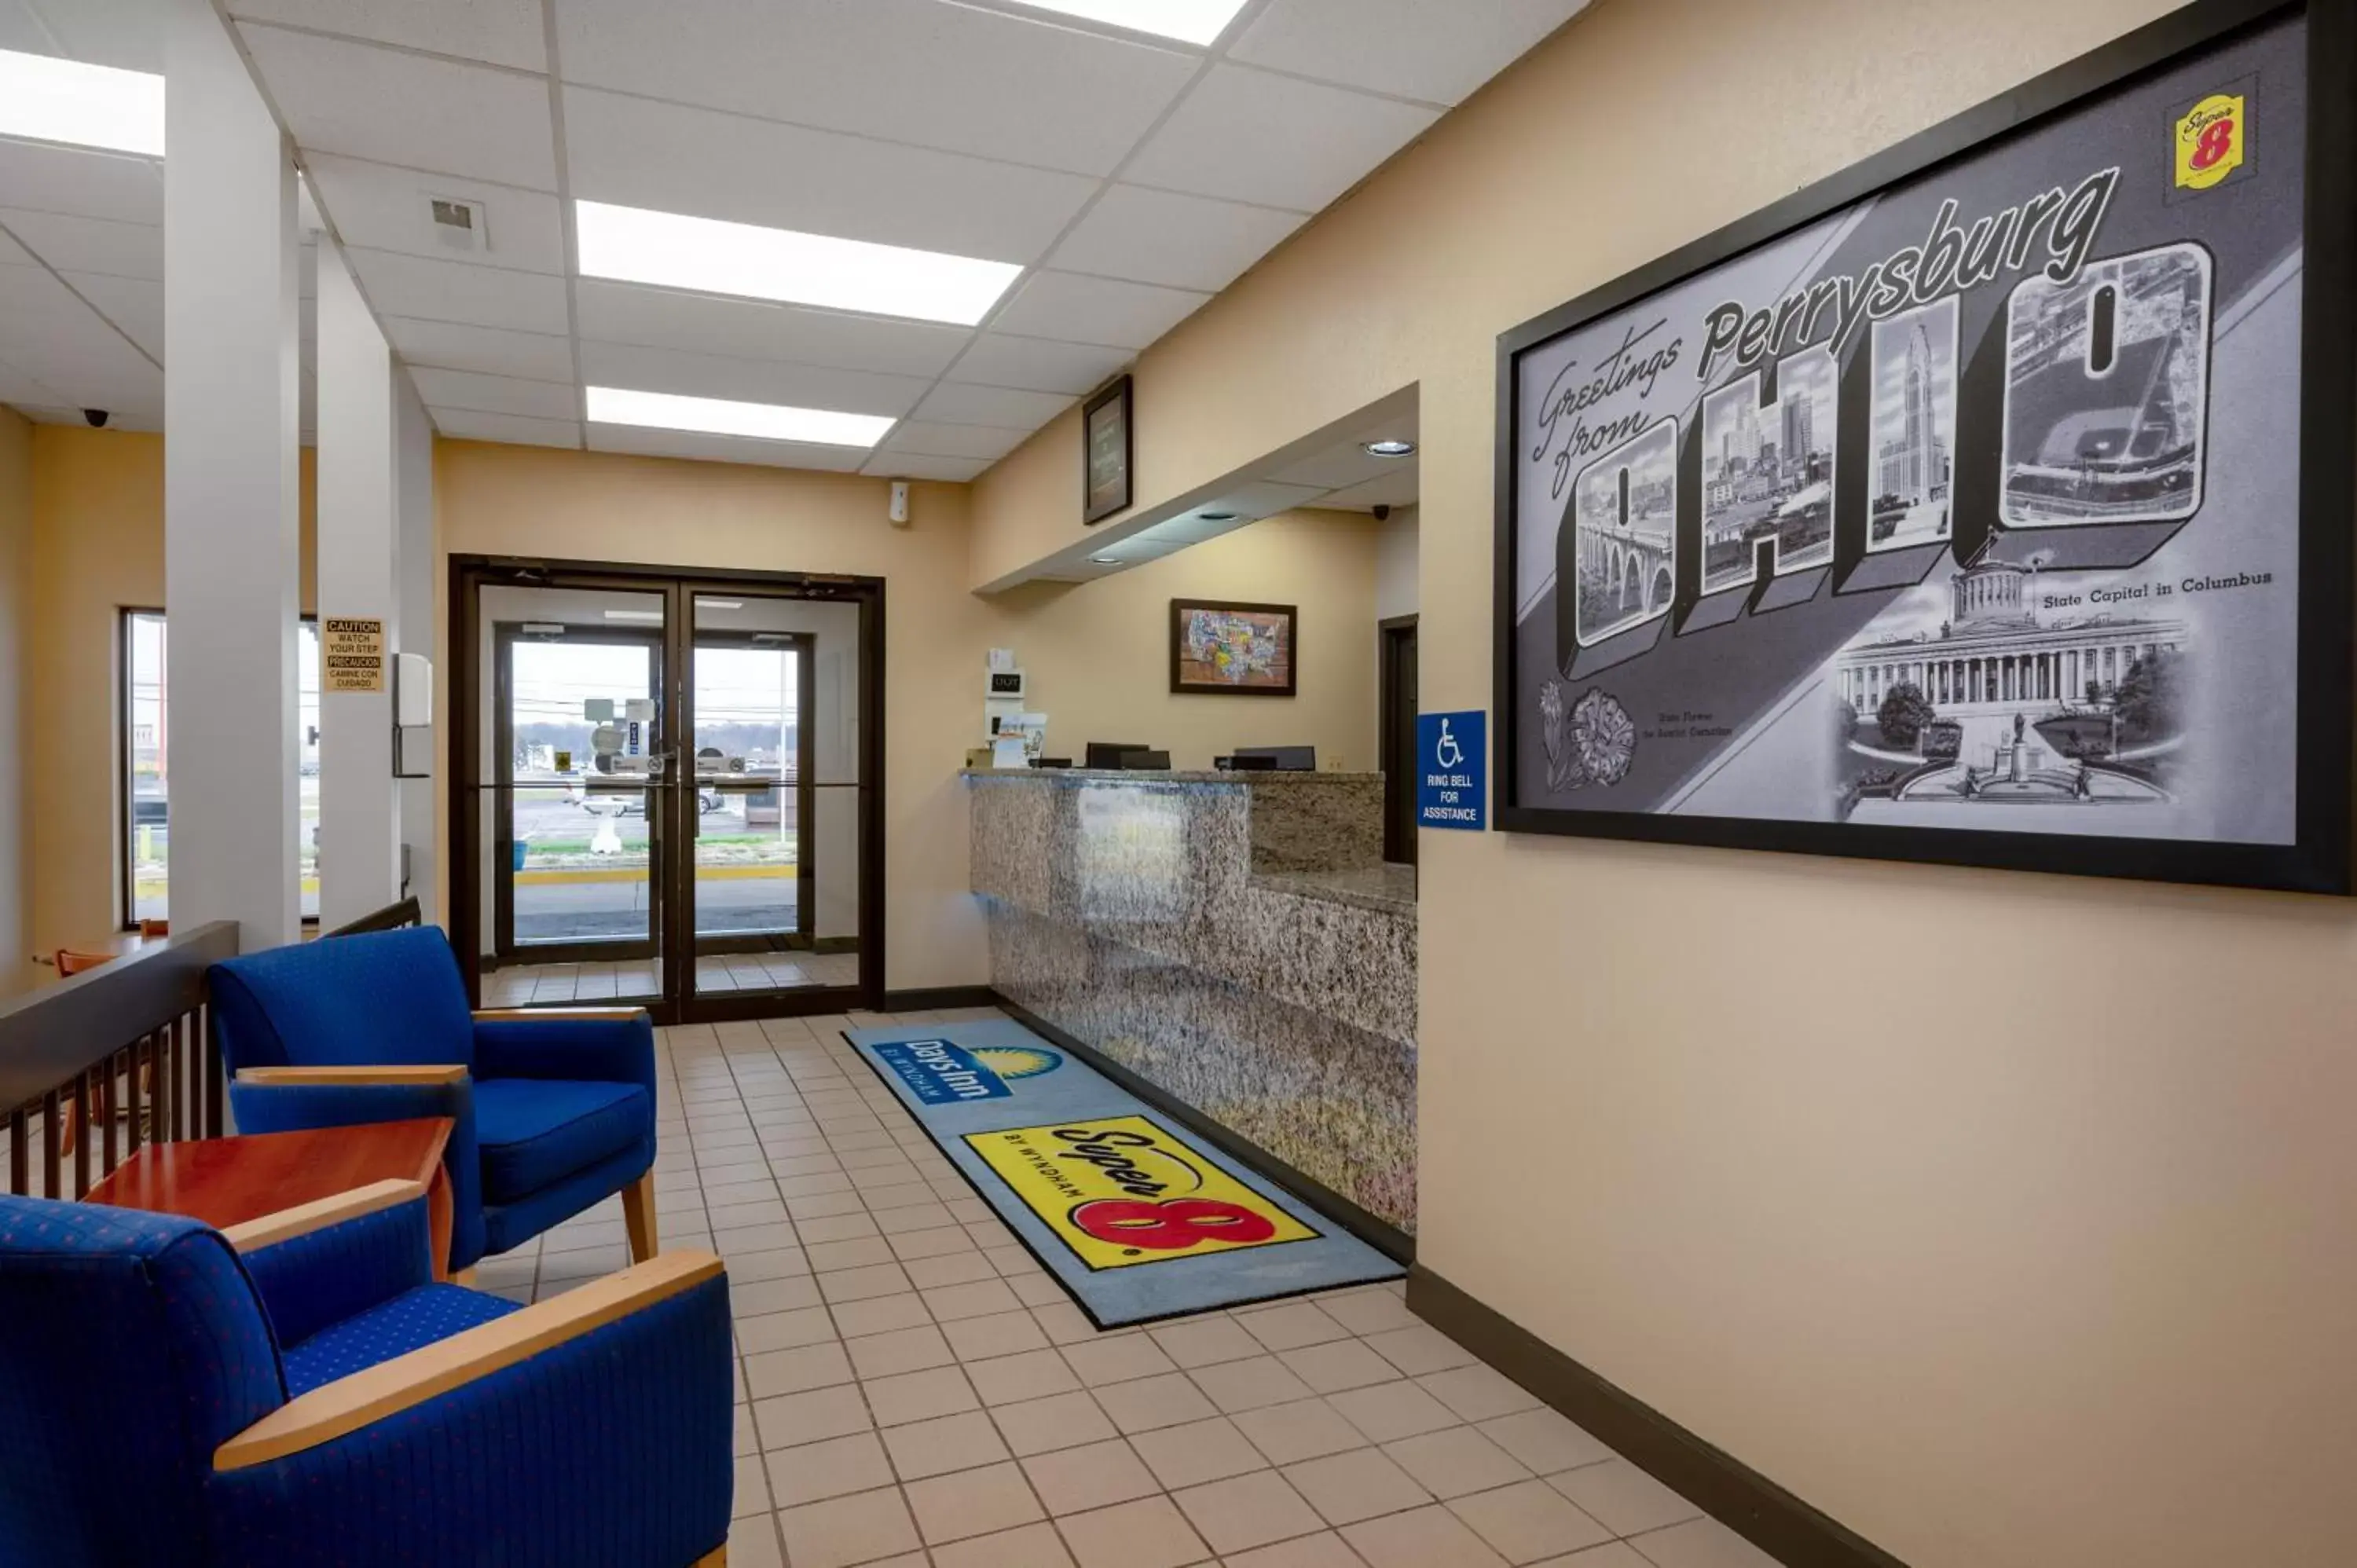 Lobby or reception, Lobby/Reception in Super 8 by Wyndham Perrysburg-Toledo